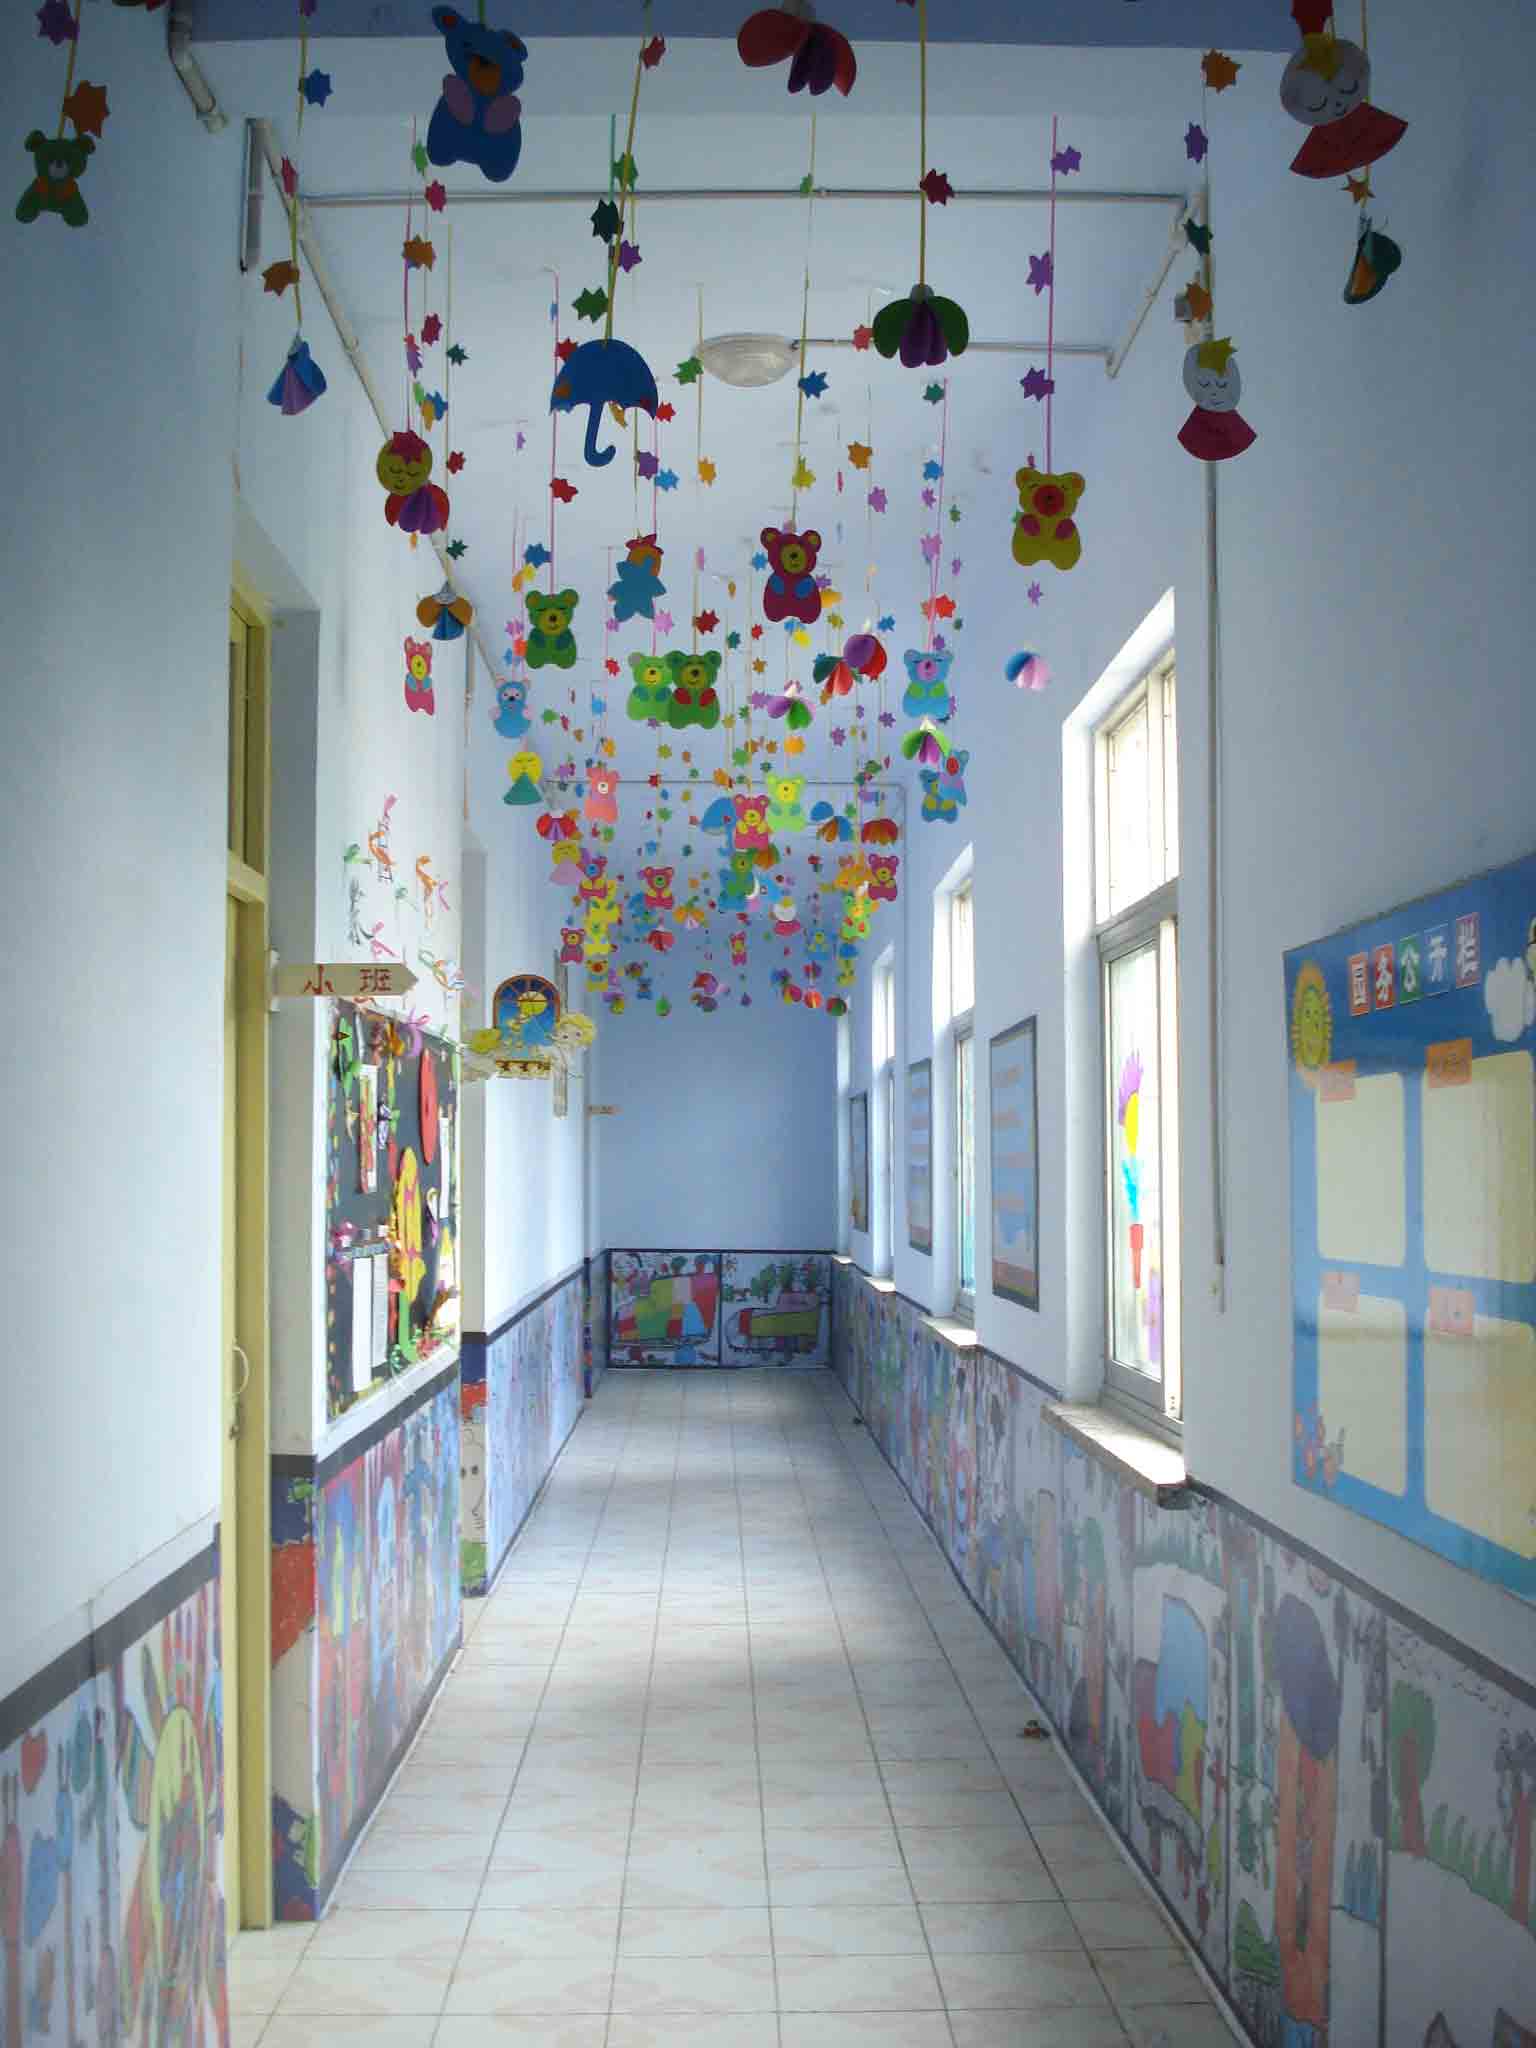 大量幼儿园环境布置照片 [4000张](80)